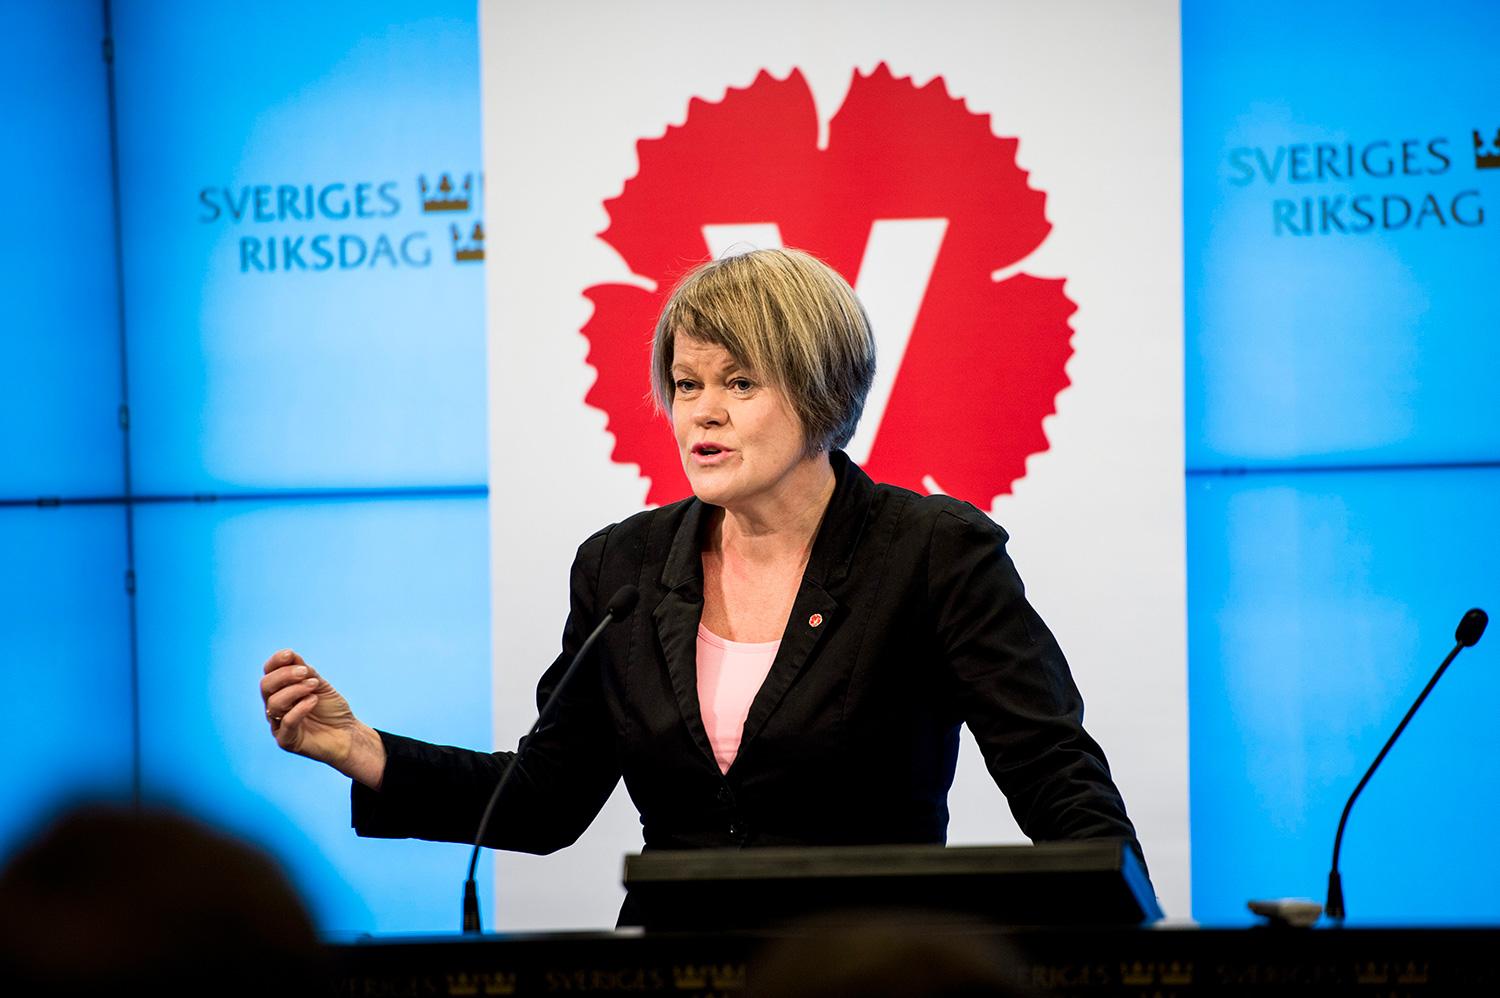 ”Våra reformer bidrar till att minska inkomstskillnaderna”, säger Ulla Andersson.